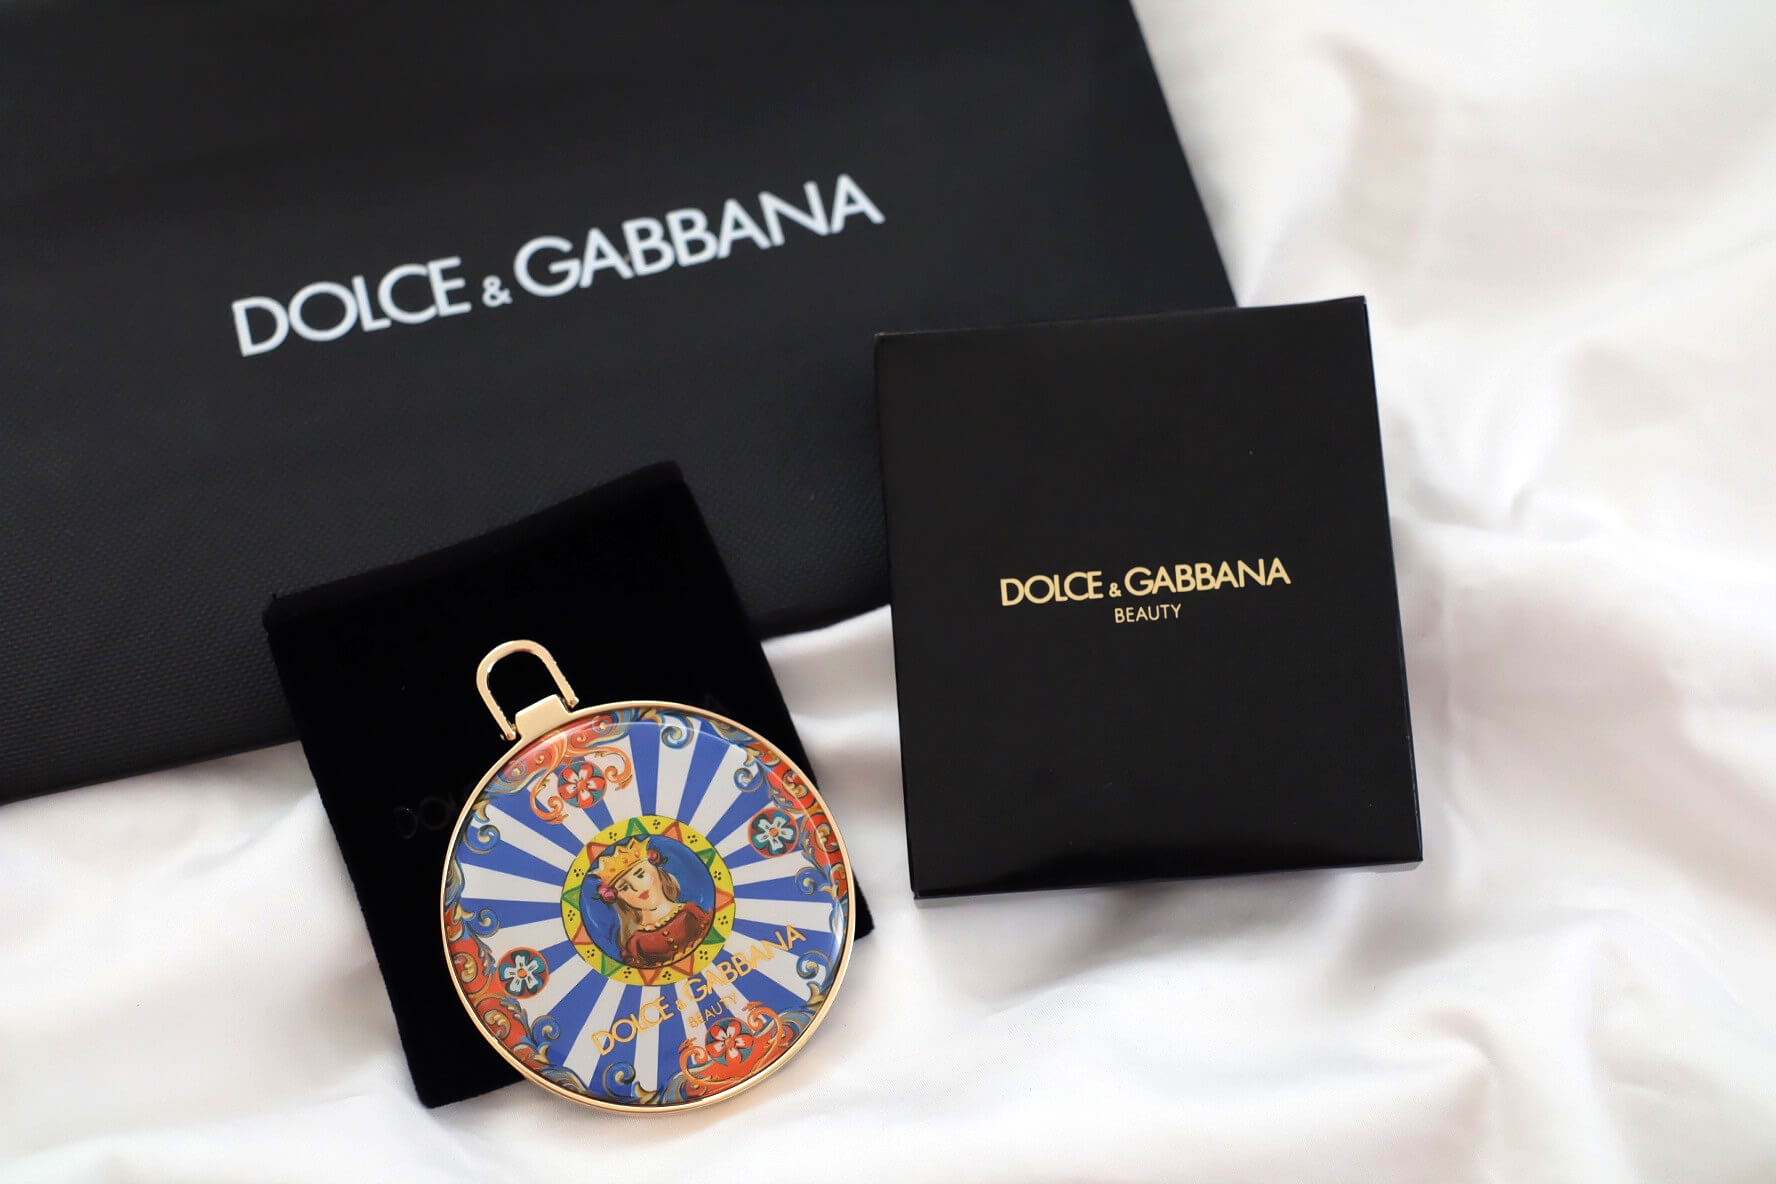 Dolce & Gabbana Solar Glow Mirror Charm , กระจก Dolce & Gabbana Solar Glow Mirror Charm ,Dolce & Gabbana Solar Glow Mirror Charm กระจก , Dolce & Gabbana Solar Glow Mirror Charm ราคา , Dolce & Gabbana Solar Glow Mirror Charm รีวิว ,